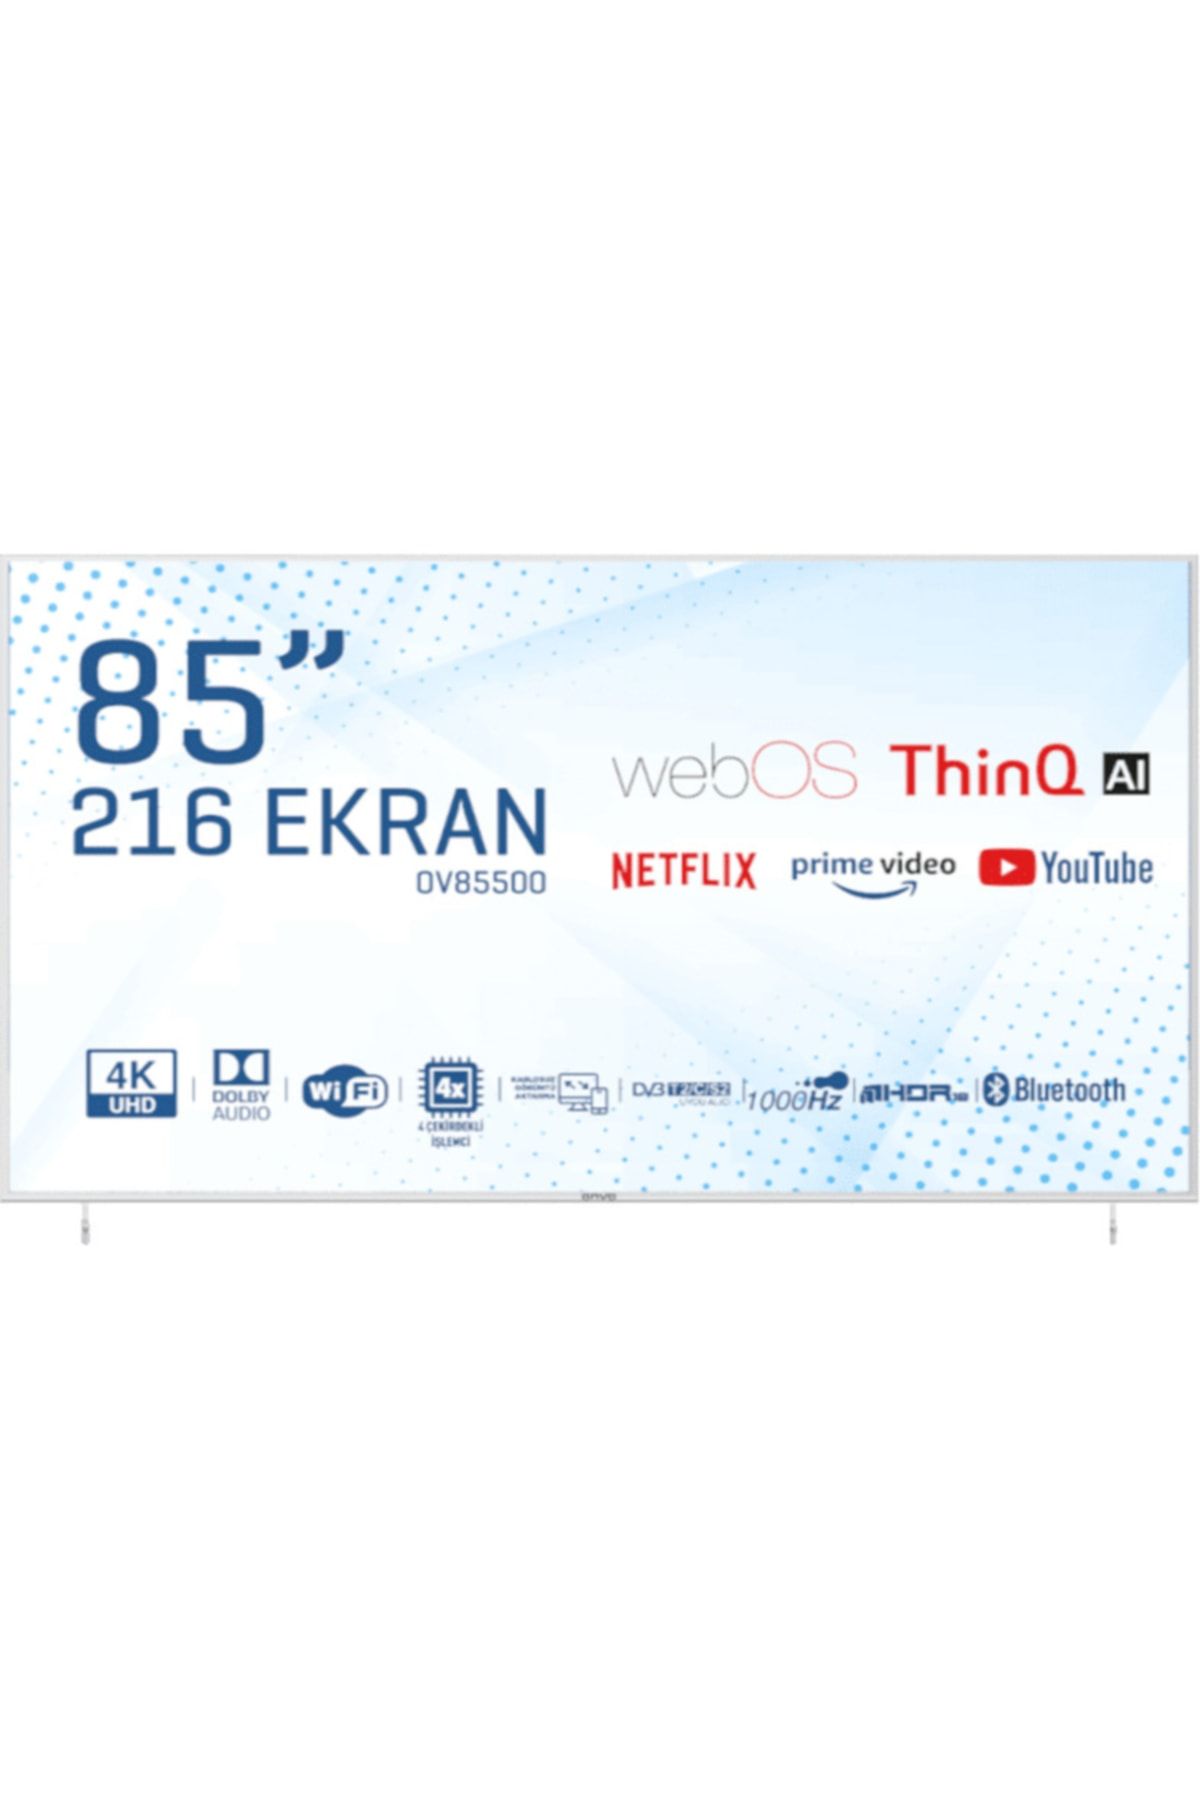 ONVO OV85500 85" 216 Ekran Uydu Alıcılı 4K Ultra HD Smart LED TV